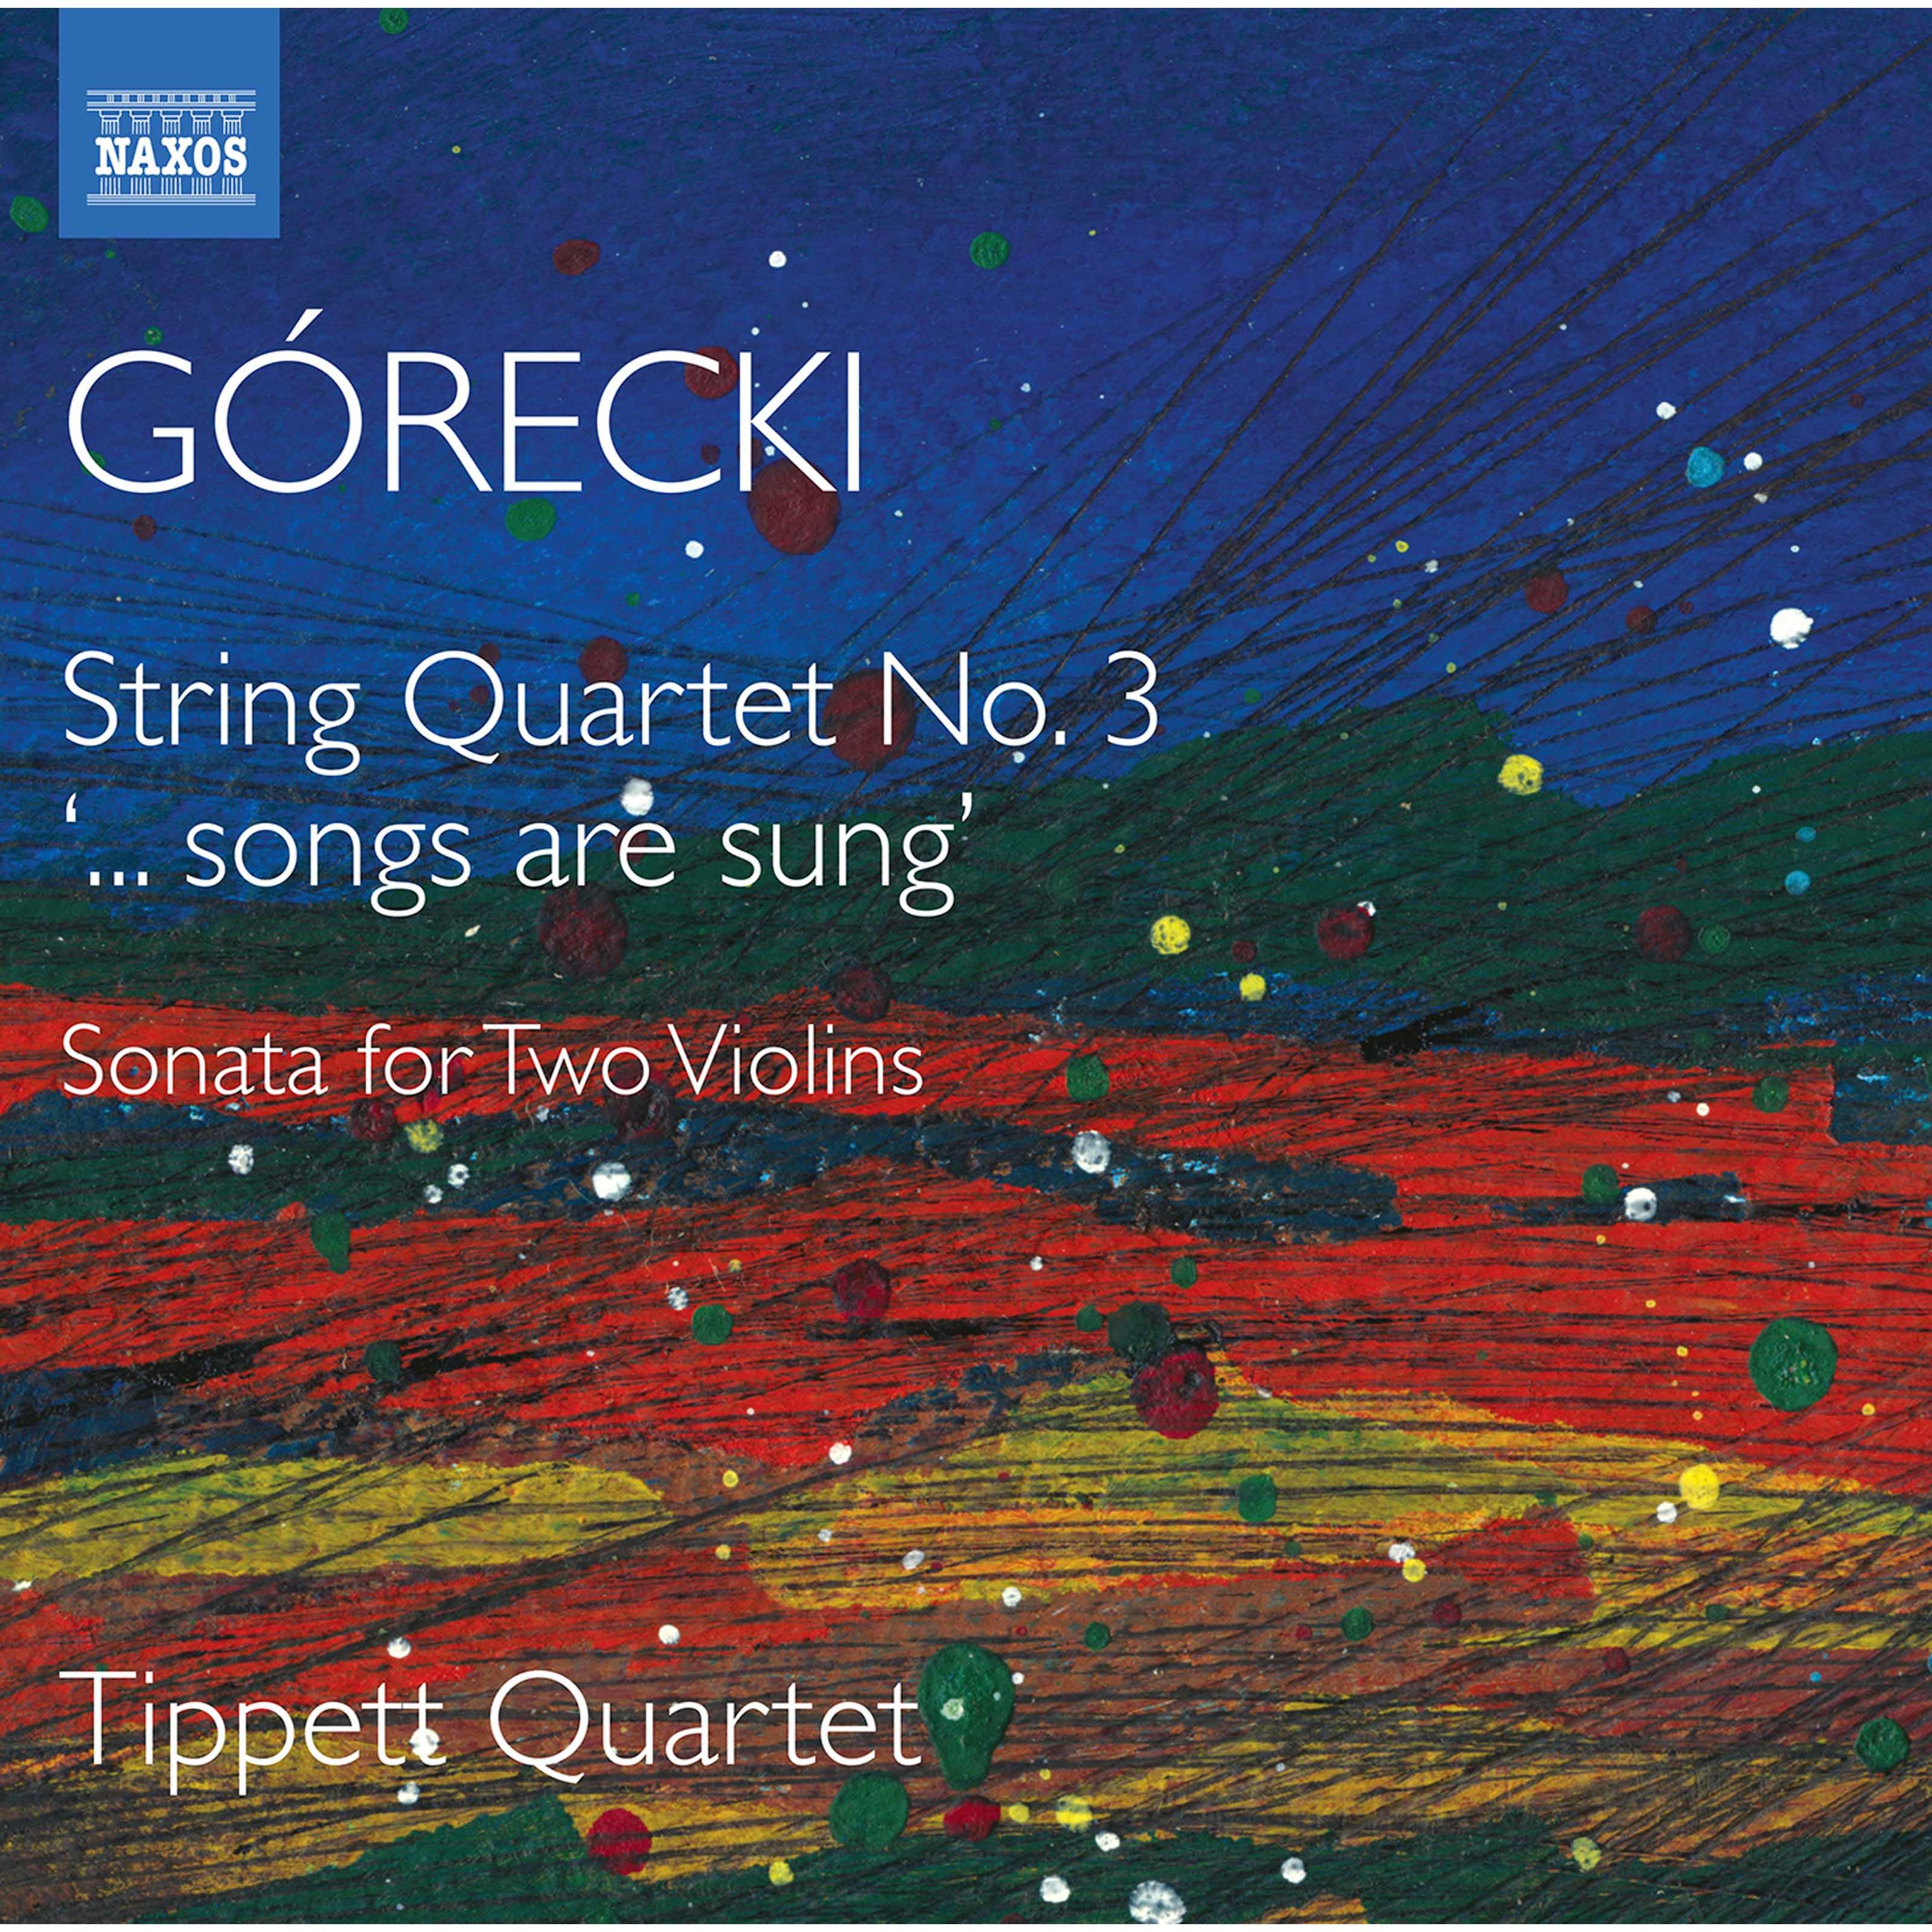 Tippett Quartet - Gorecki: Complete String Quartets, Vol. 2 (String Quartets No. 3, Sonata for 2 Violins) (2020) [FLAC 24bit/96kHz]